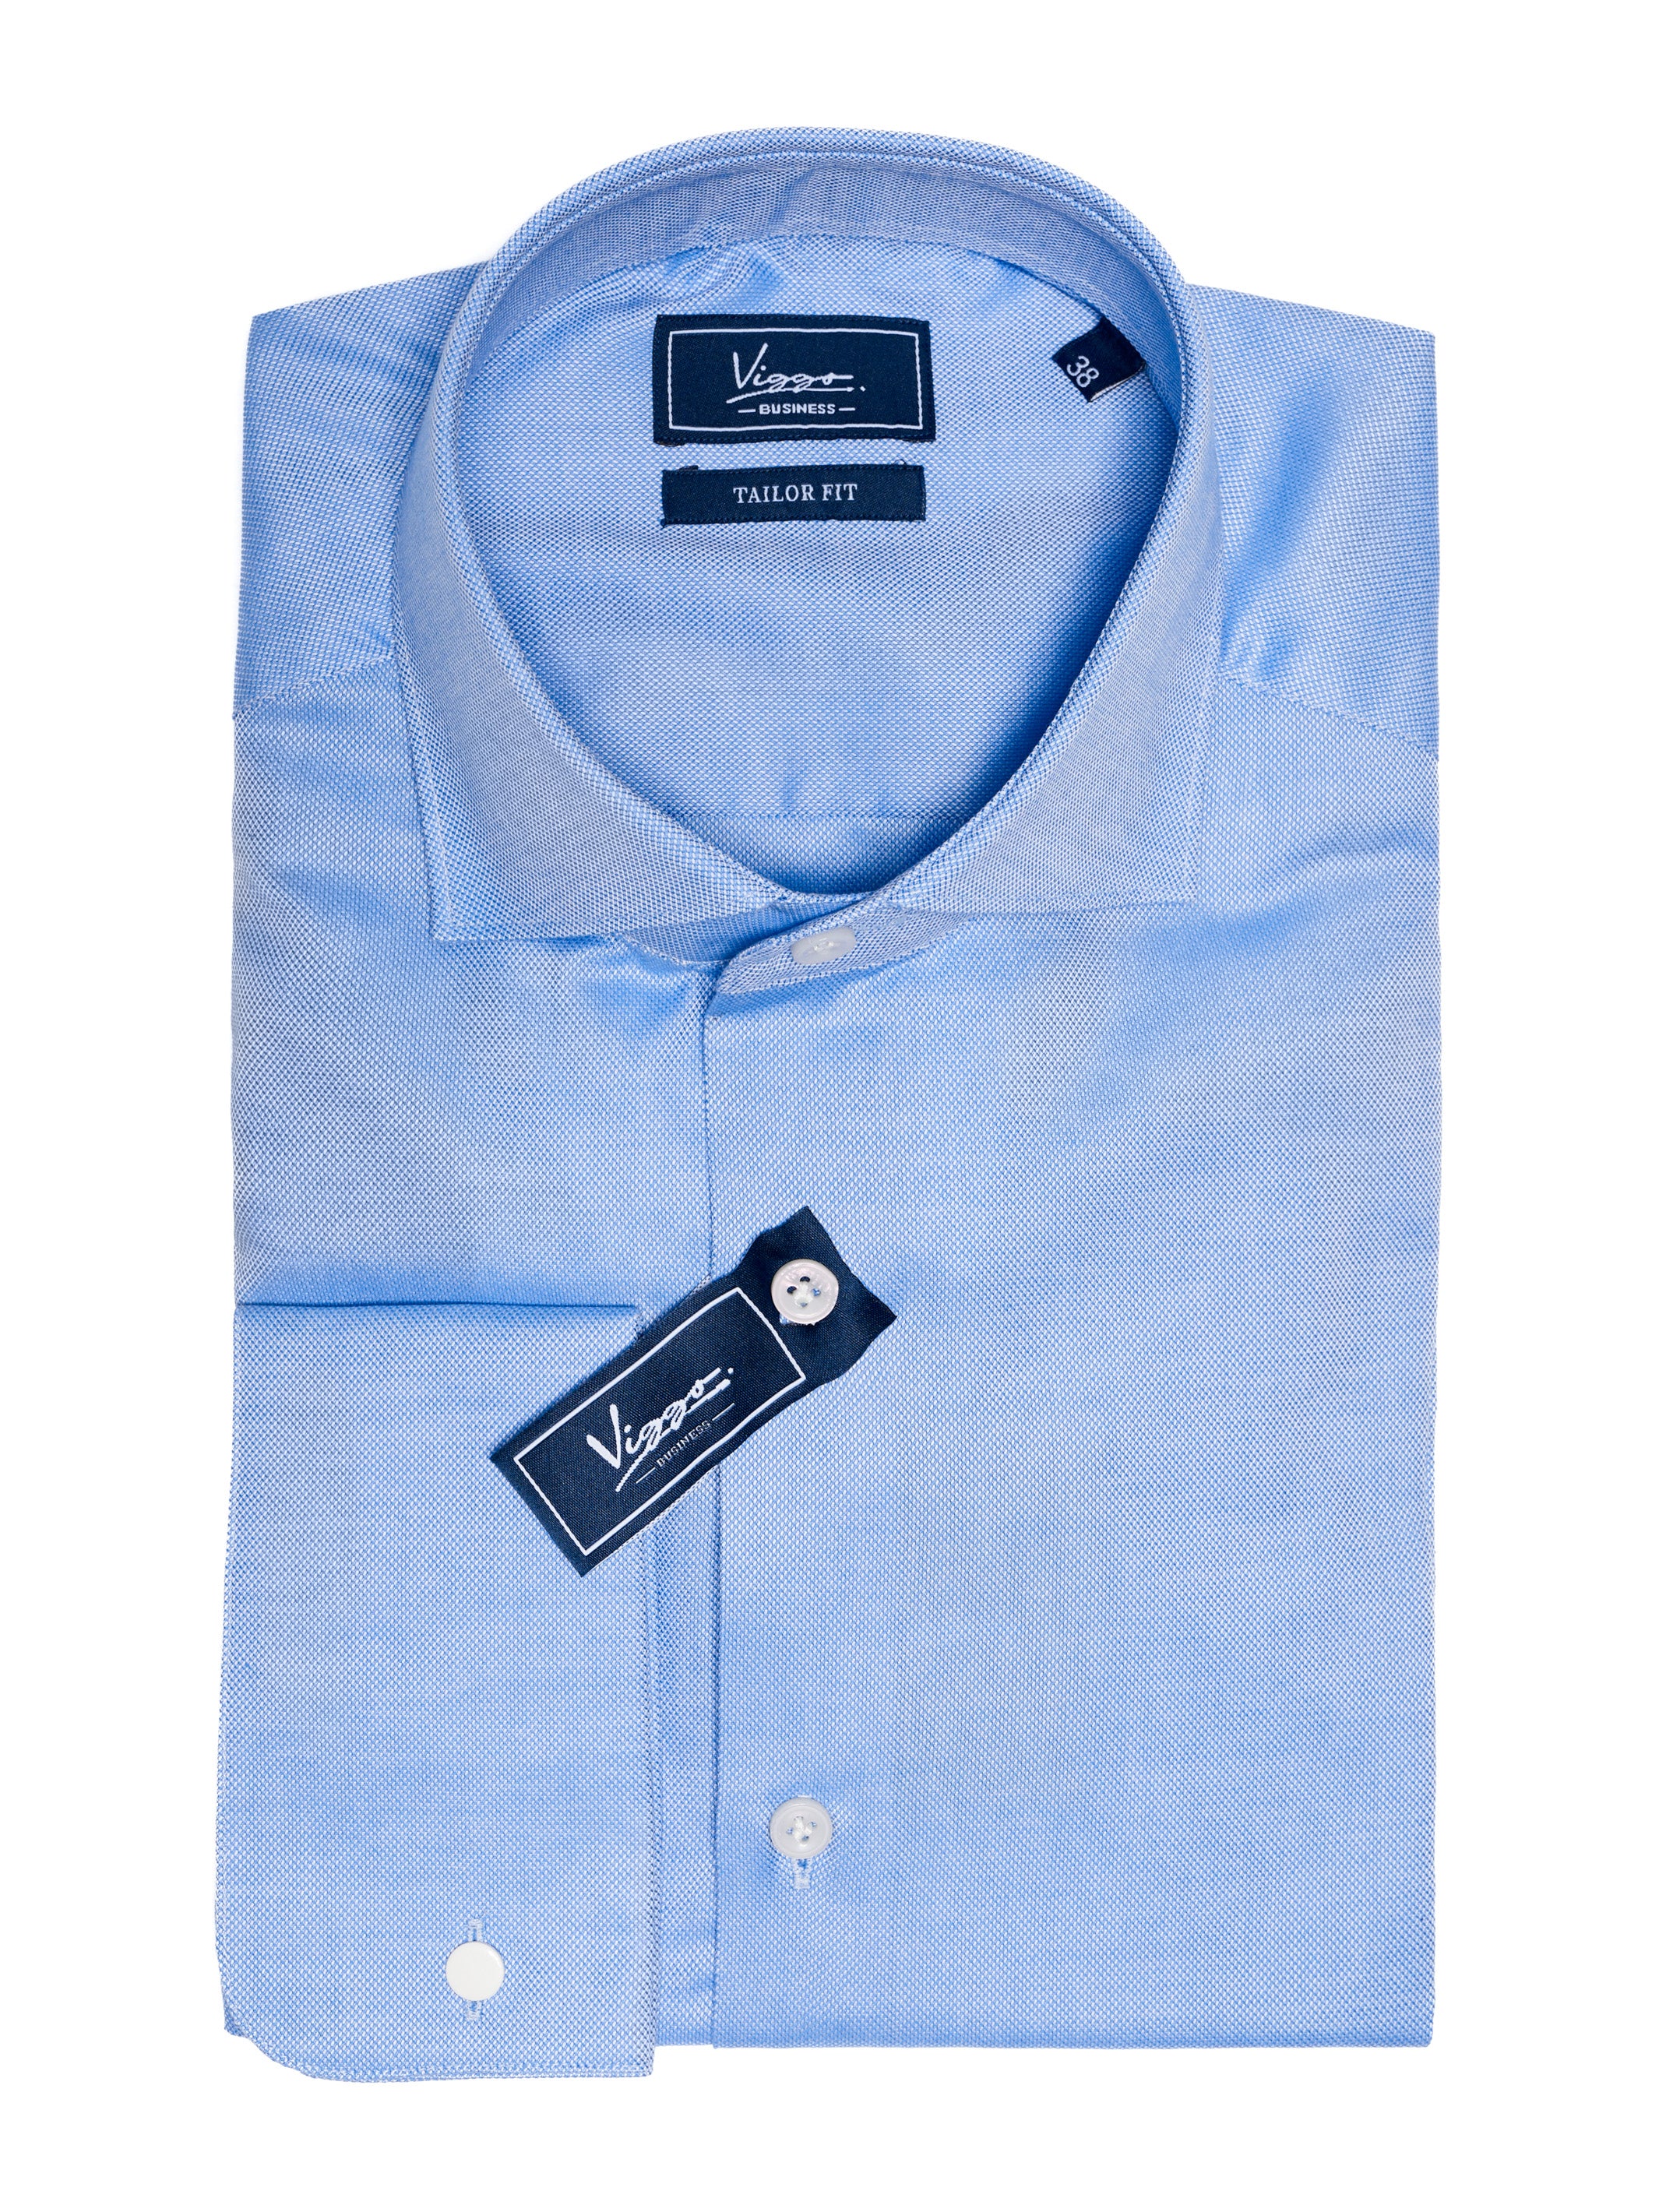 Textured blue shirt, button cuff